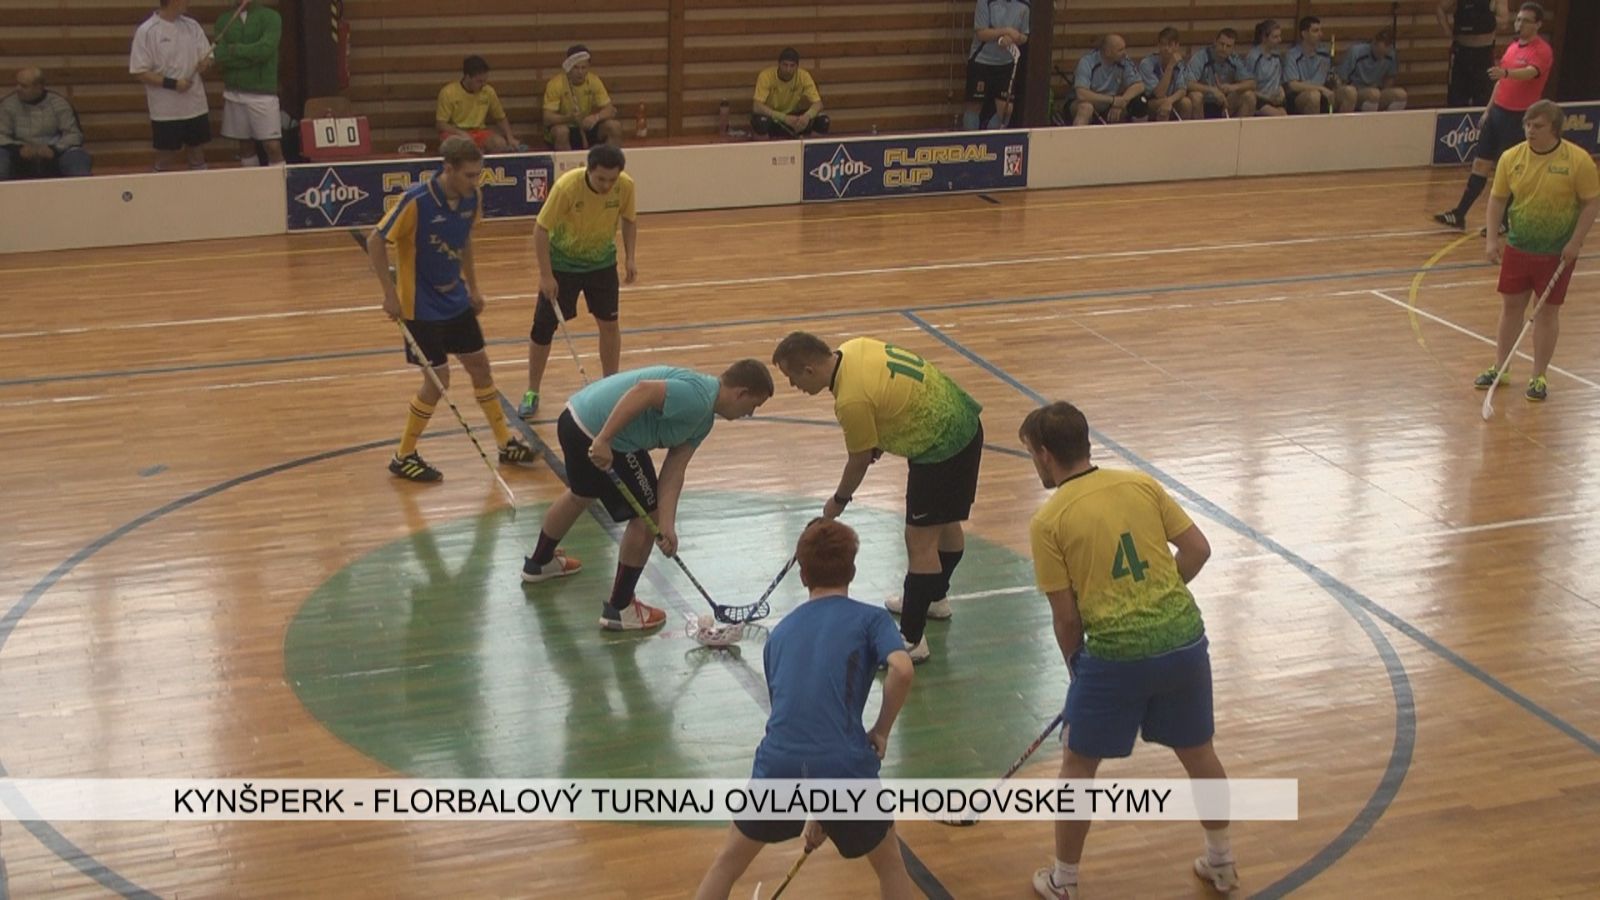 Kynšperk: Florbalový turnaj ovládly chodovské týmy  (TV Západ)